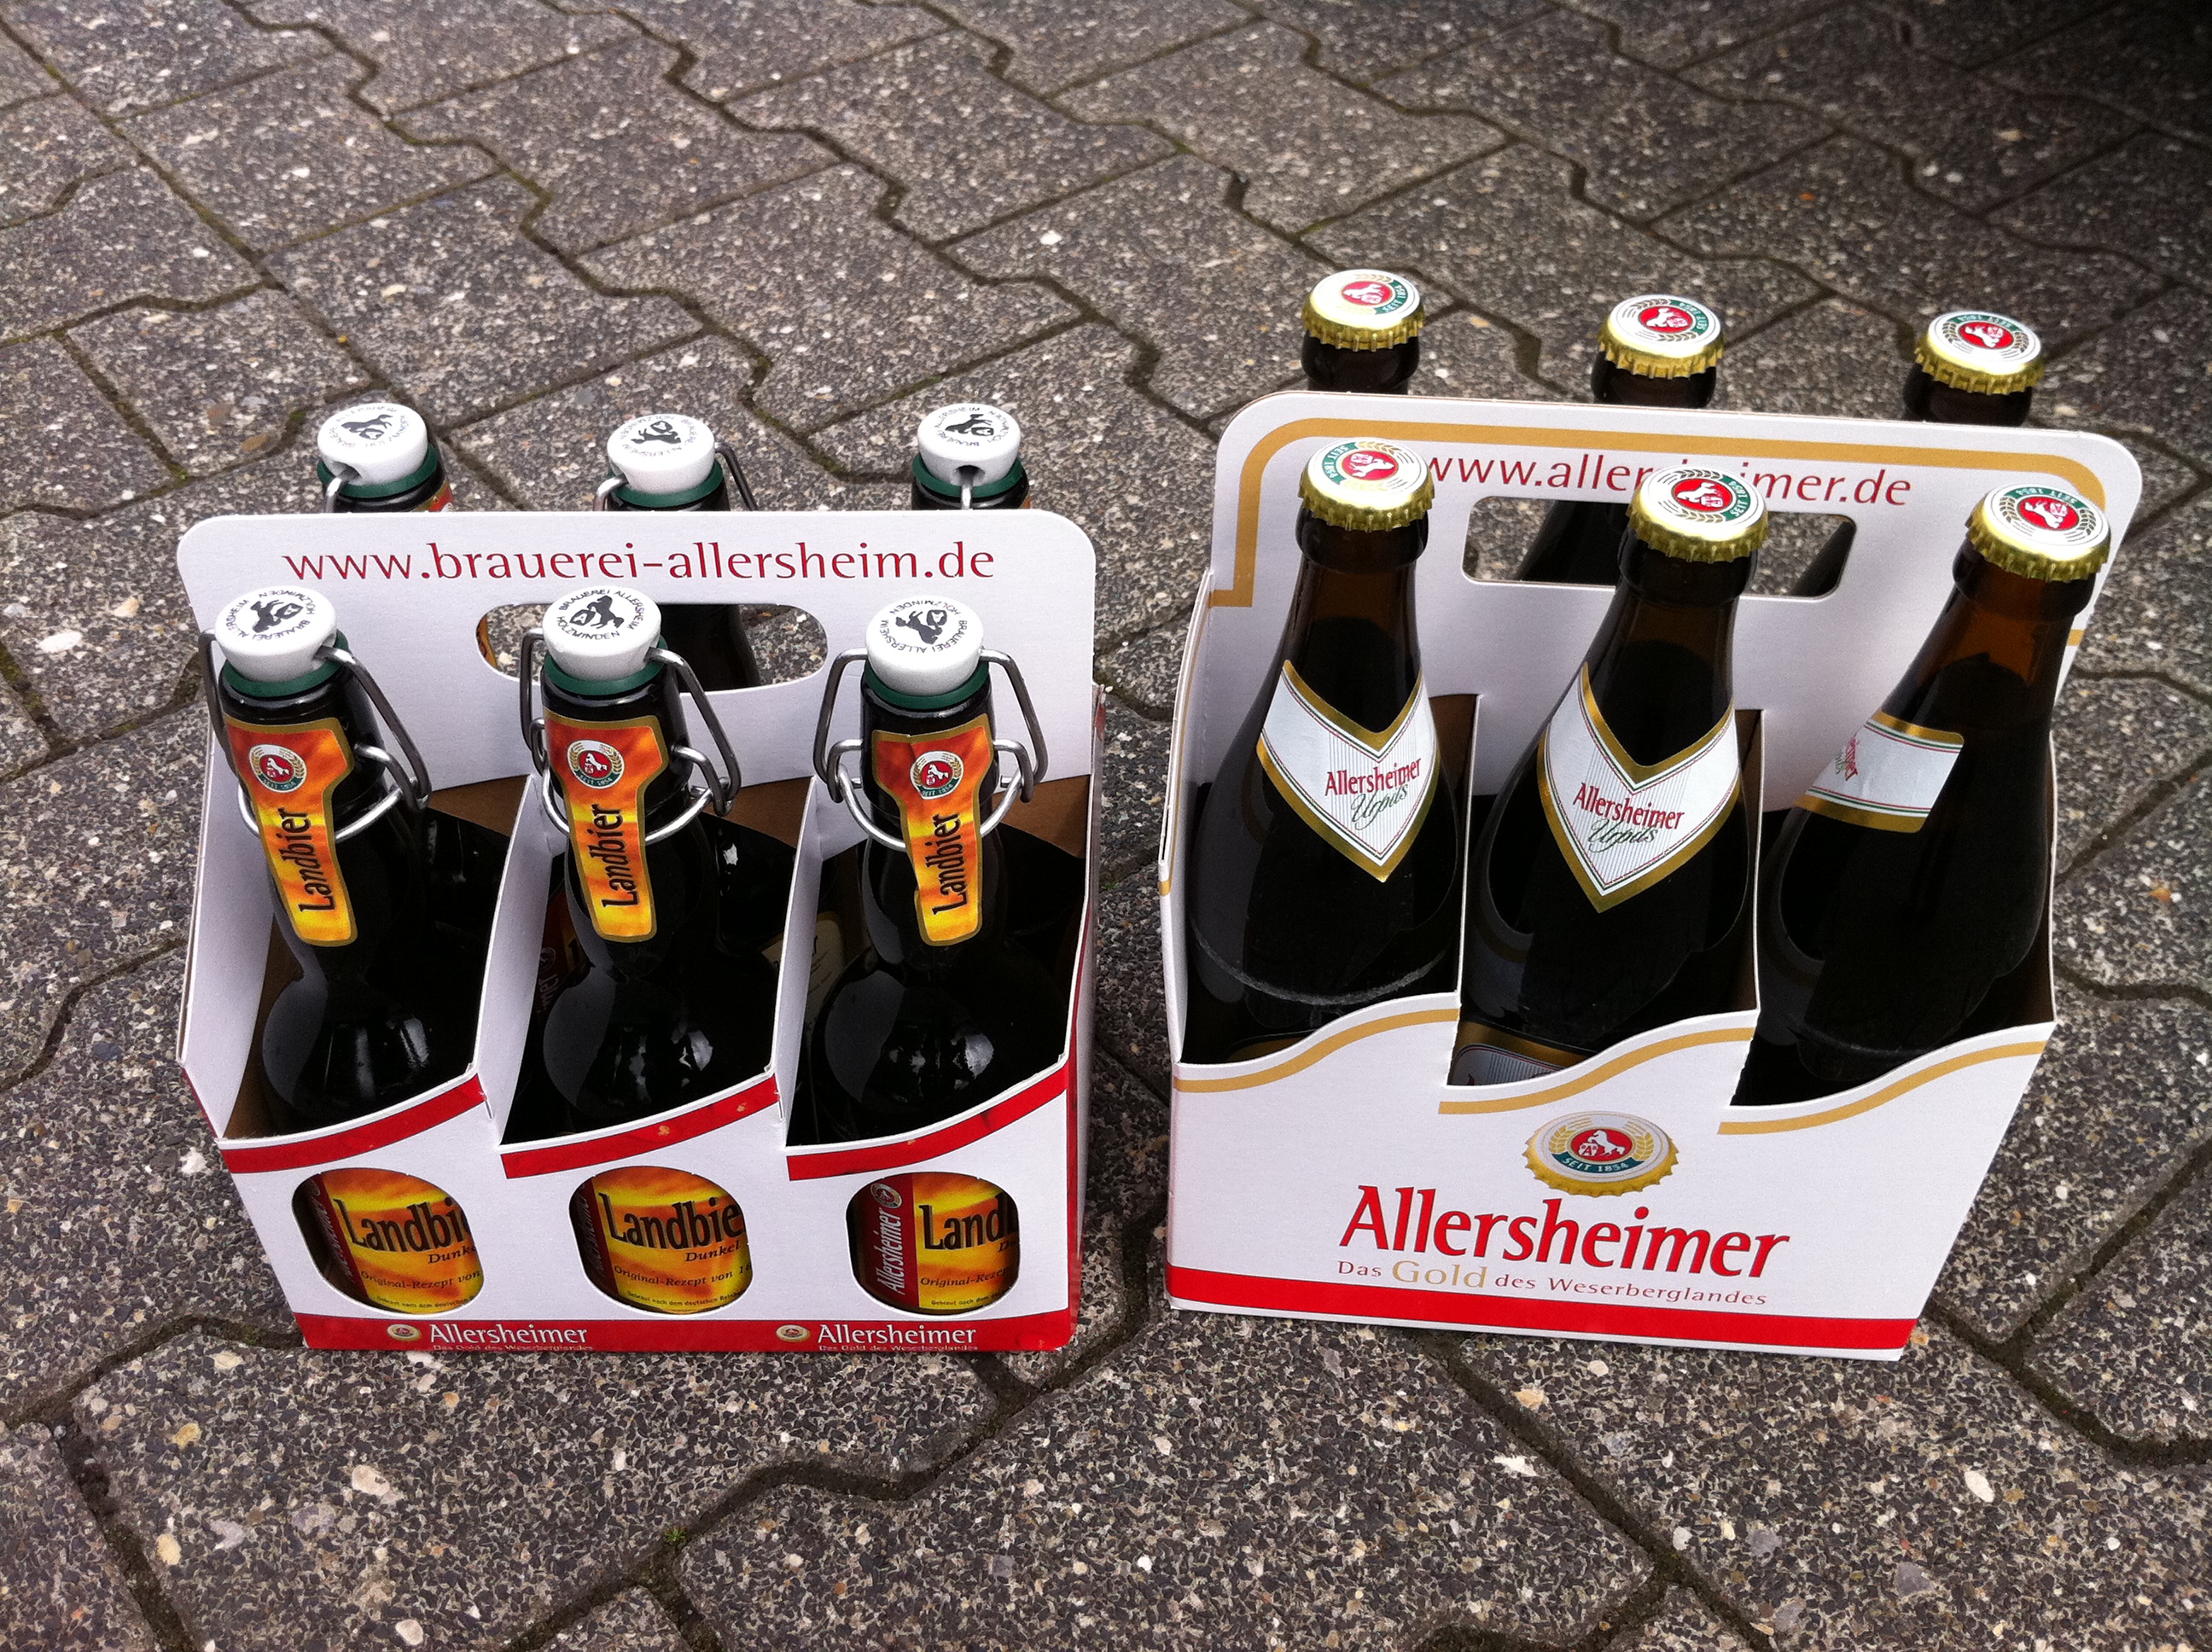 Allerheimer Bier - Das Gold des Weserberglandes. Lokale Biersorte vom EDEKA Getränkemarkt in Stadtoldendorf